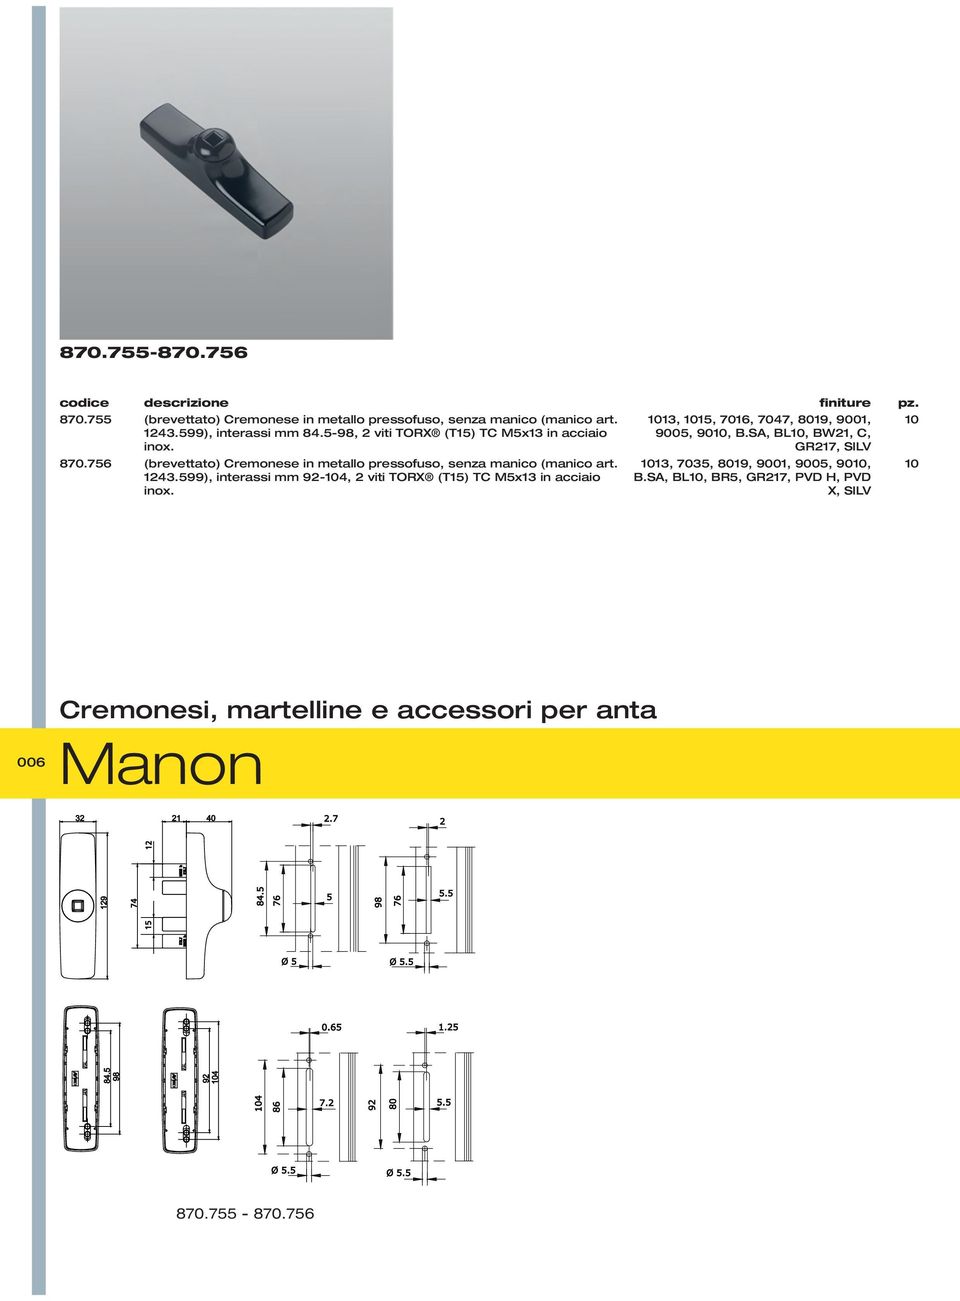 SA, BL10, BW21, C, GR217, SILV 10 870.76 (brevettato) Cremonese in metallo pressofuso, senza manico (manico art. 1243.